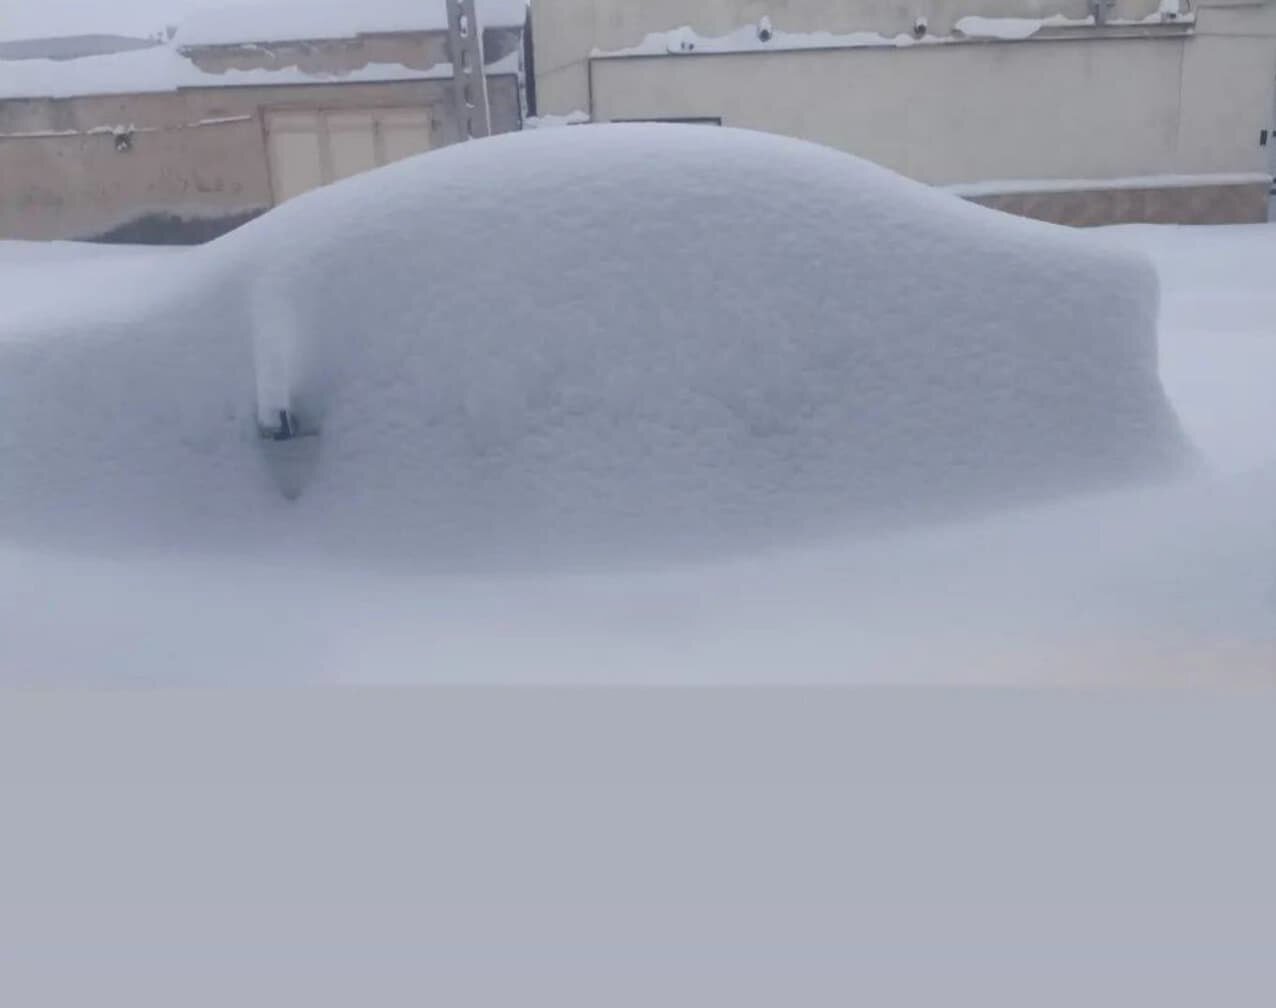 ارتفاع برف در برخی مناطق ایران به ۲ متر رسید/ اعلام وضعیت قرمز این شهر!